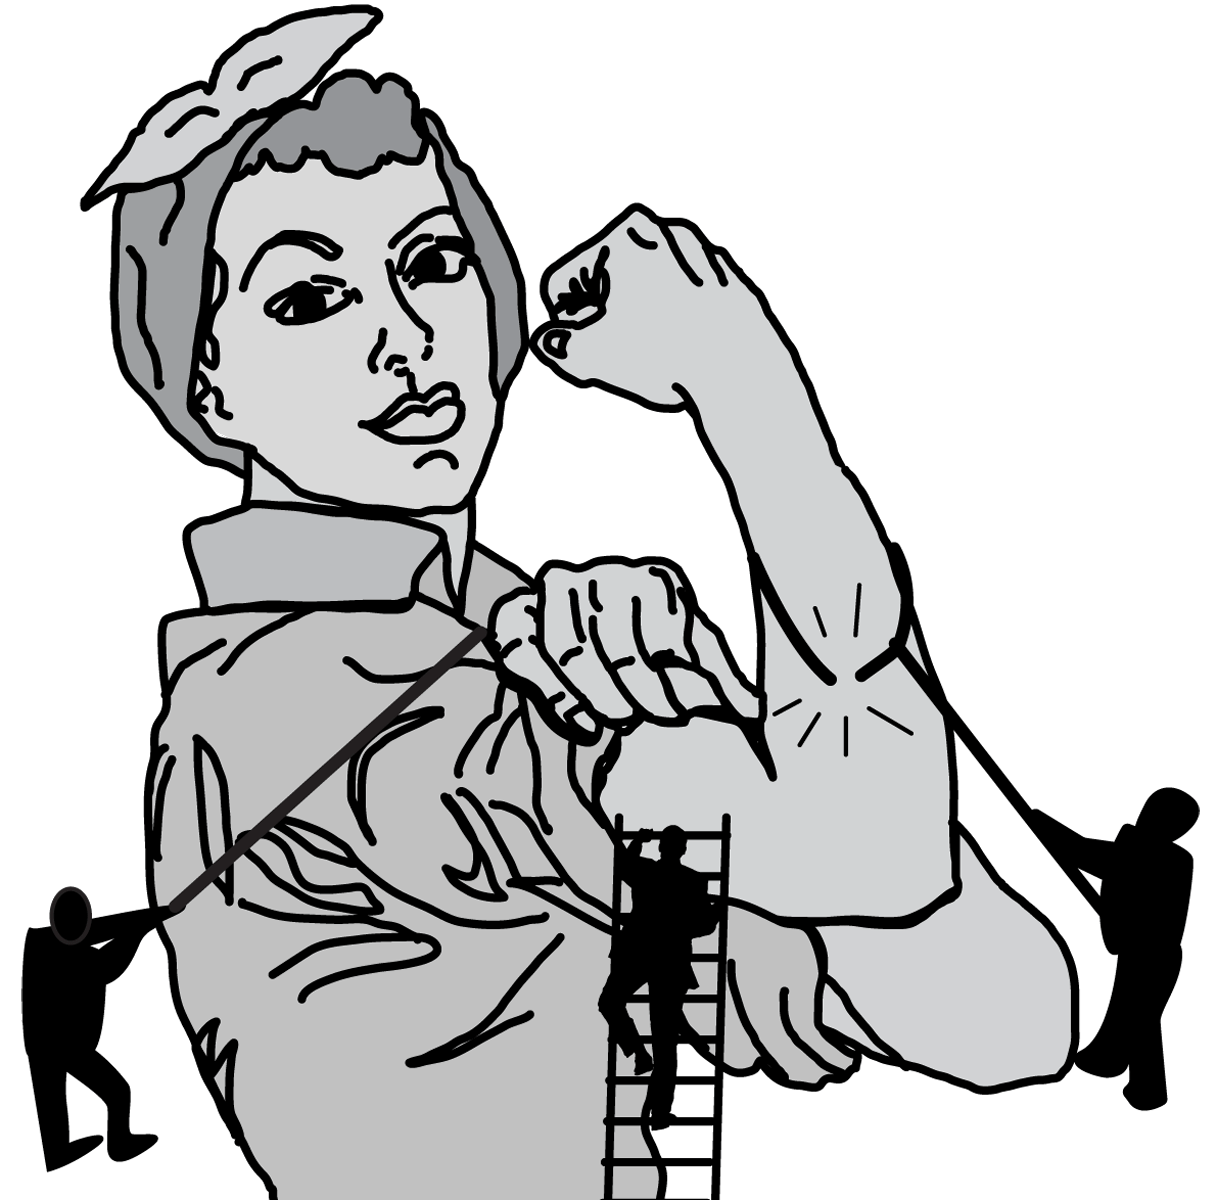 Illustration of Rosie the Riveter